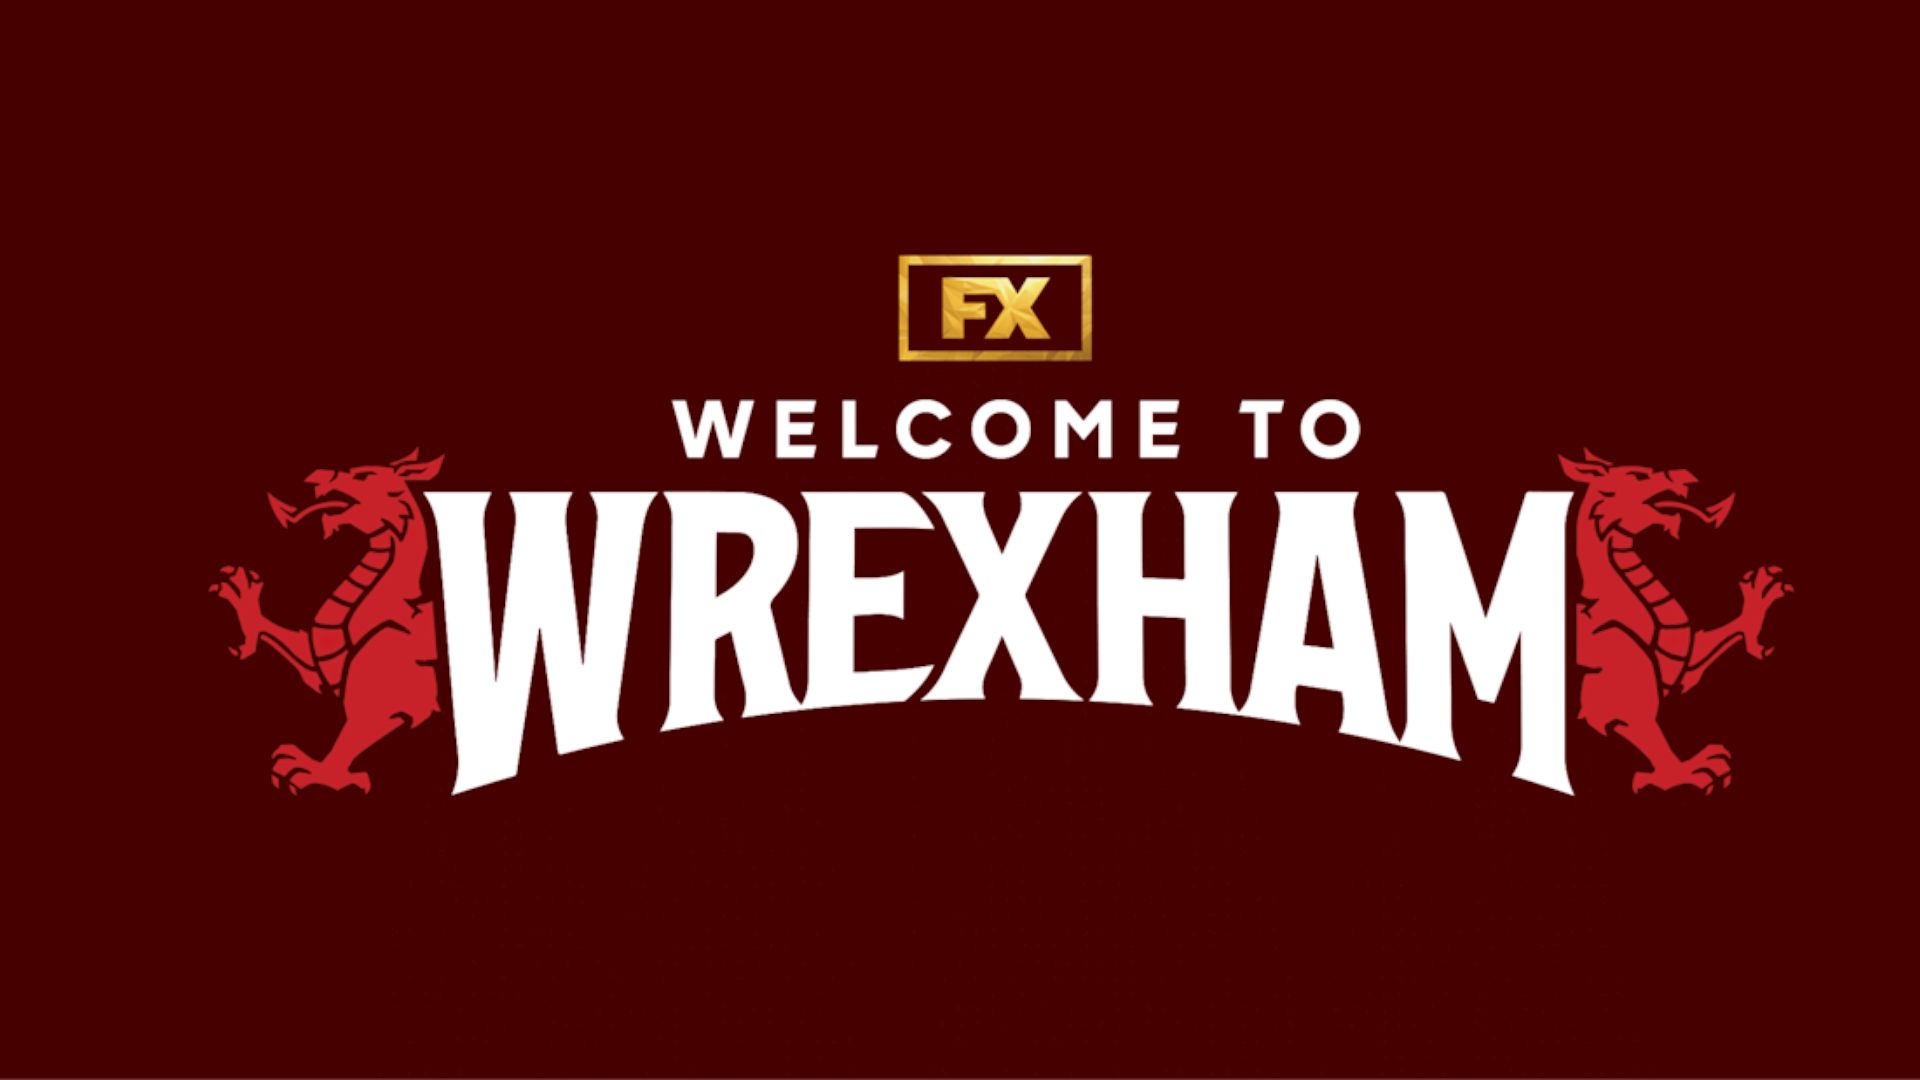 A serie bem vindos a wrexham atinge alcance mundial em 2022